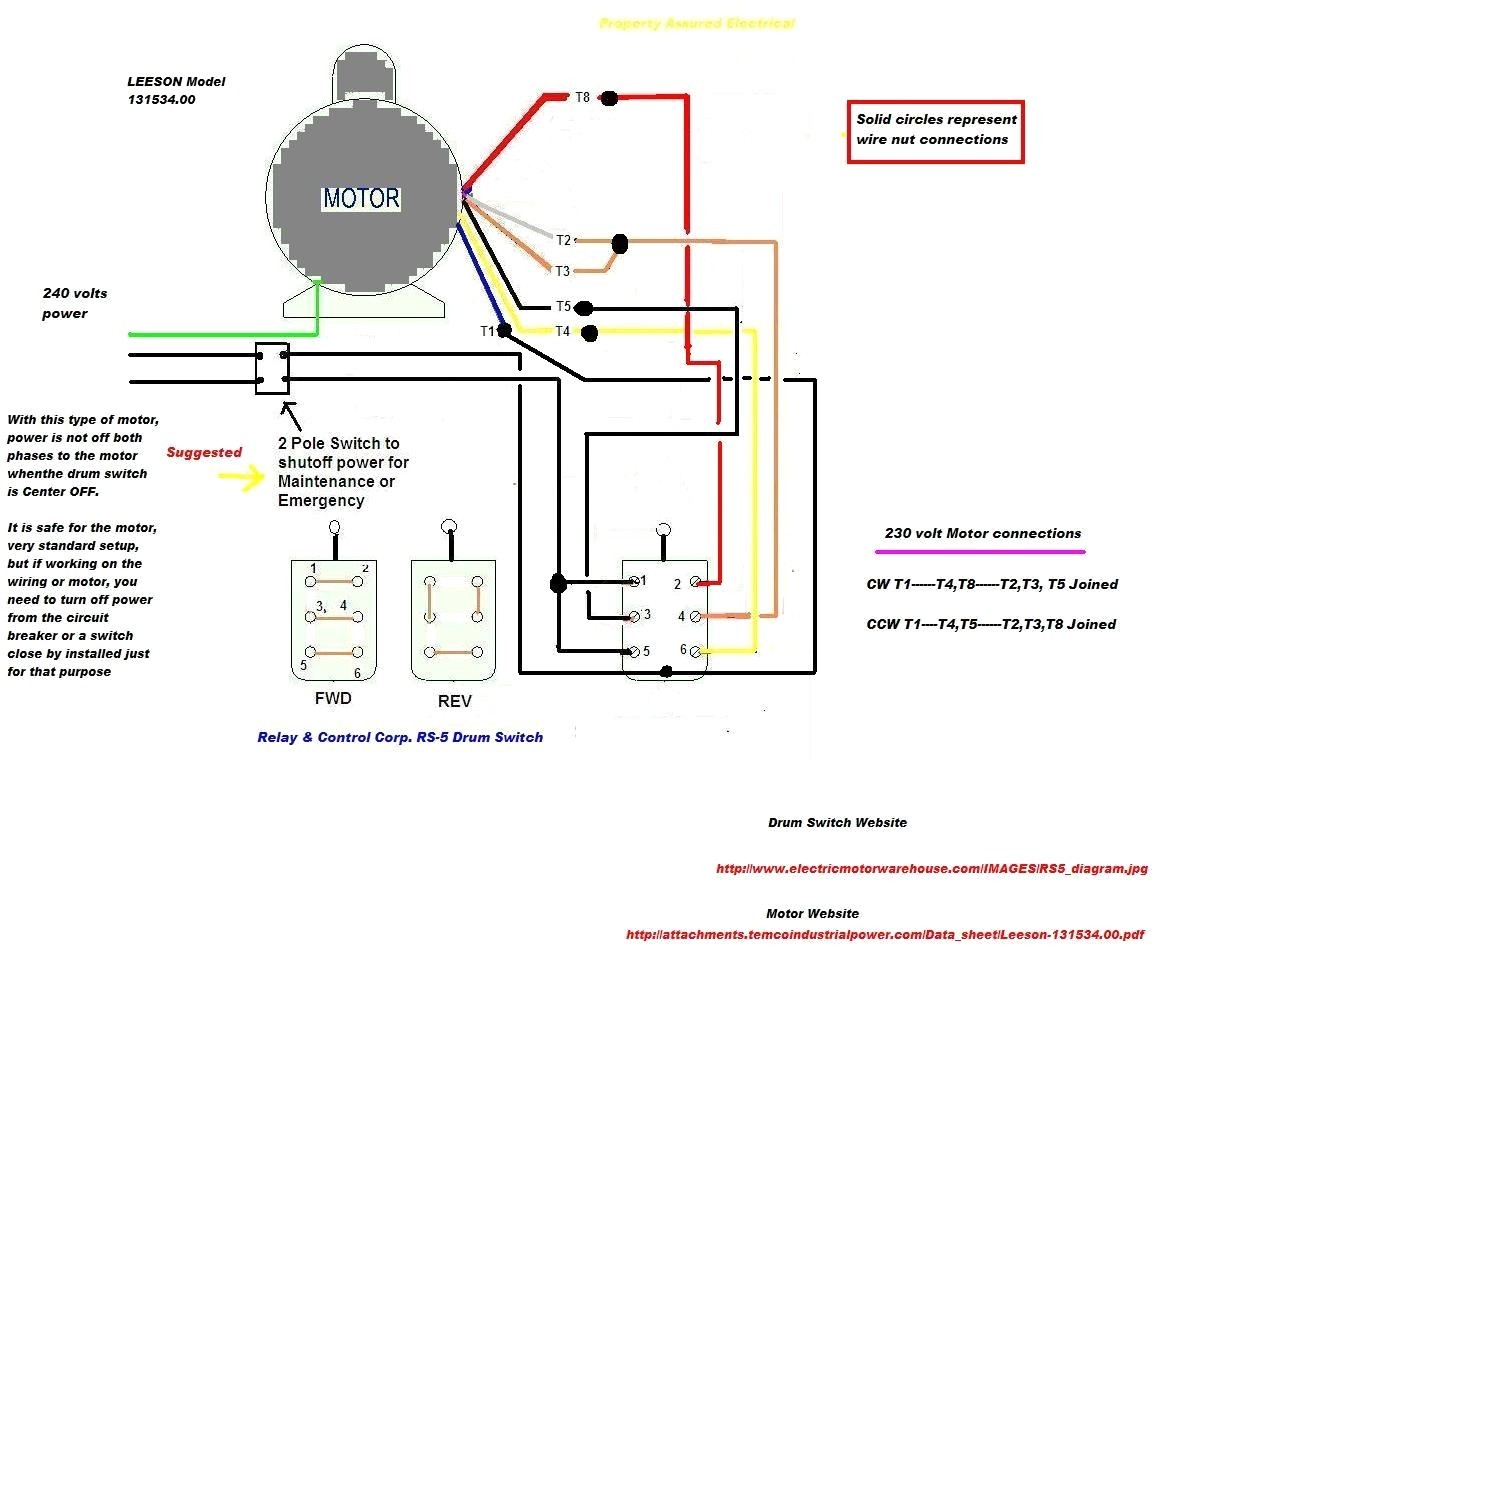 Wiring Diagram Leeson Electric Motor Valid Gimnazijabp